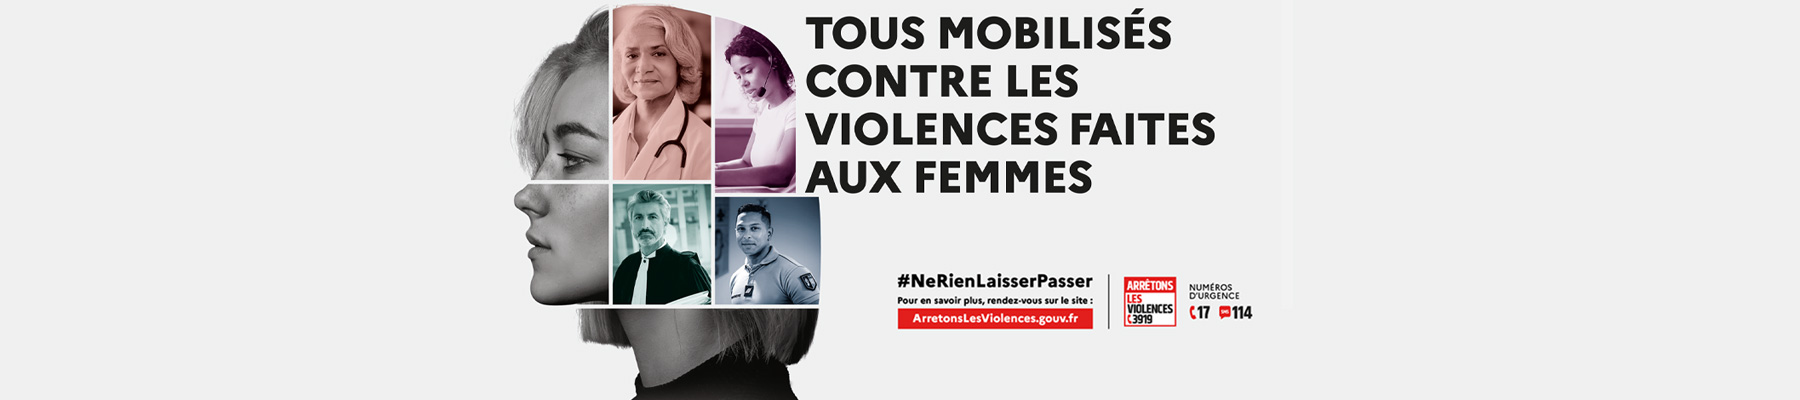 Journée internationale conte les violences faites des femmes